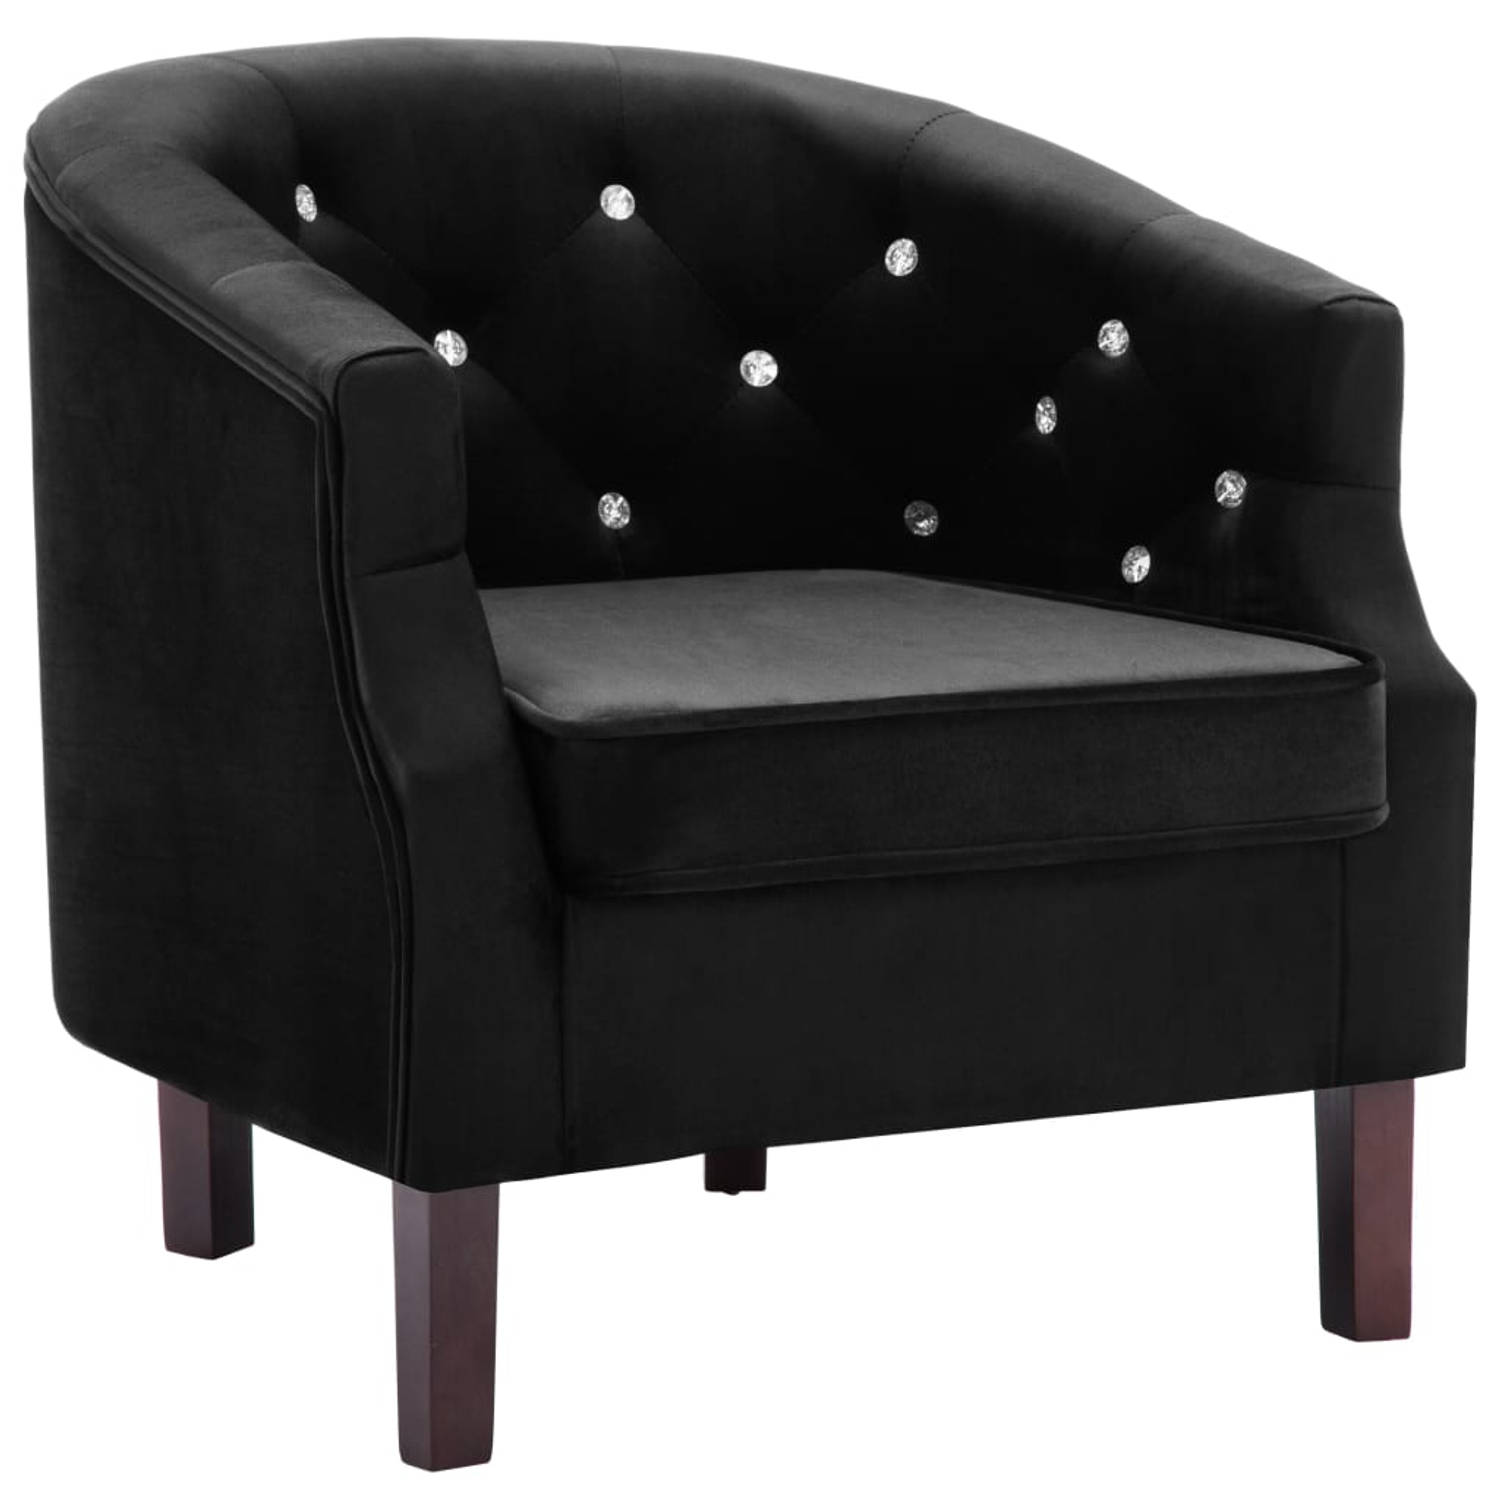 The Living Store Elegante fauteuil Fluwelen bekleding - 65 x 64 x 65 cm - zwart